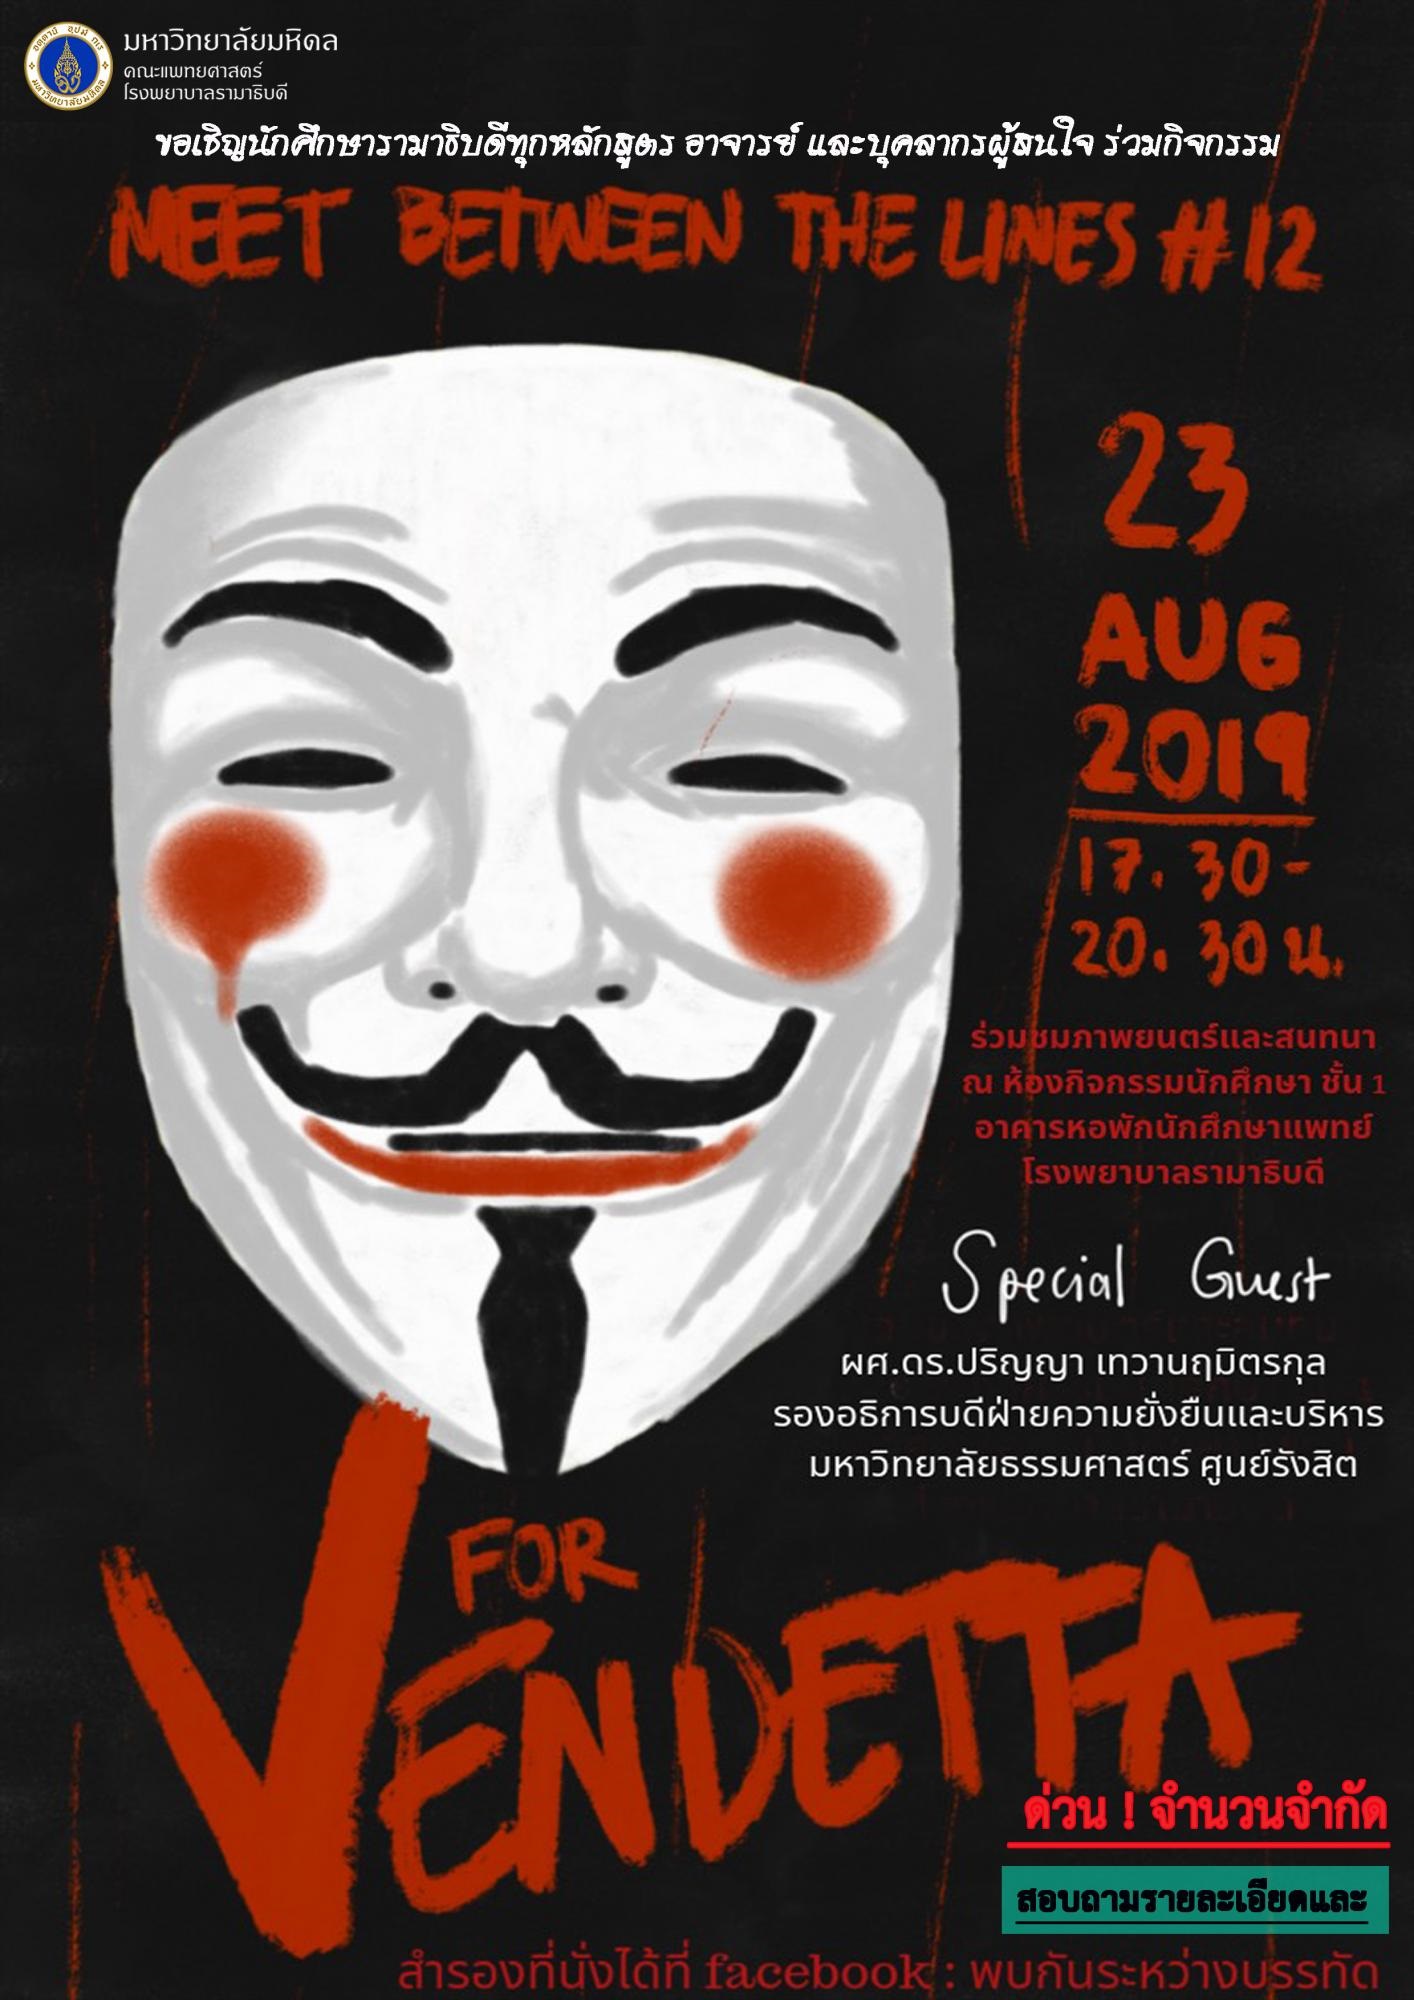 พบกันระหว่างบรรทัด ครั้งที่ 12 ตอน V for Vendetta